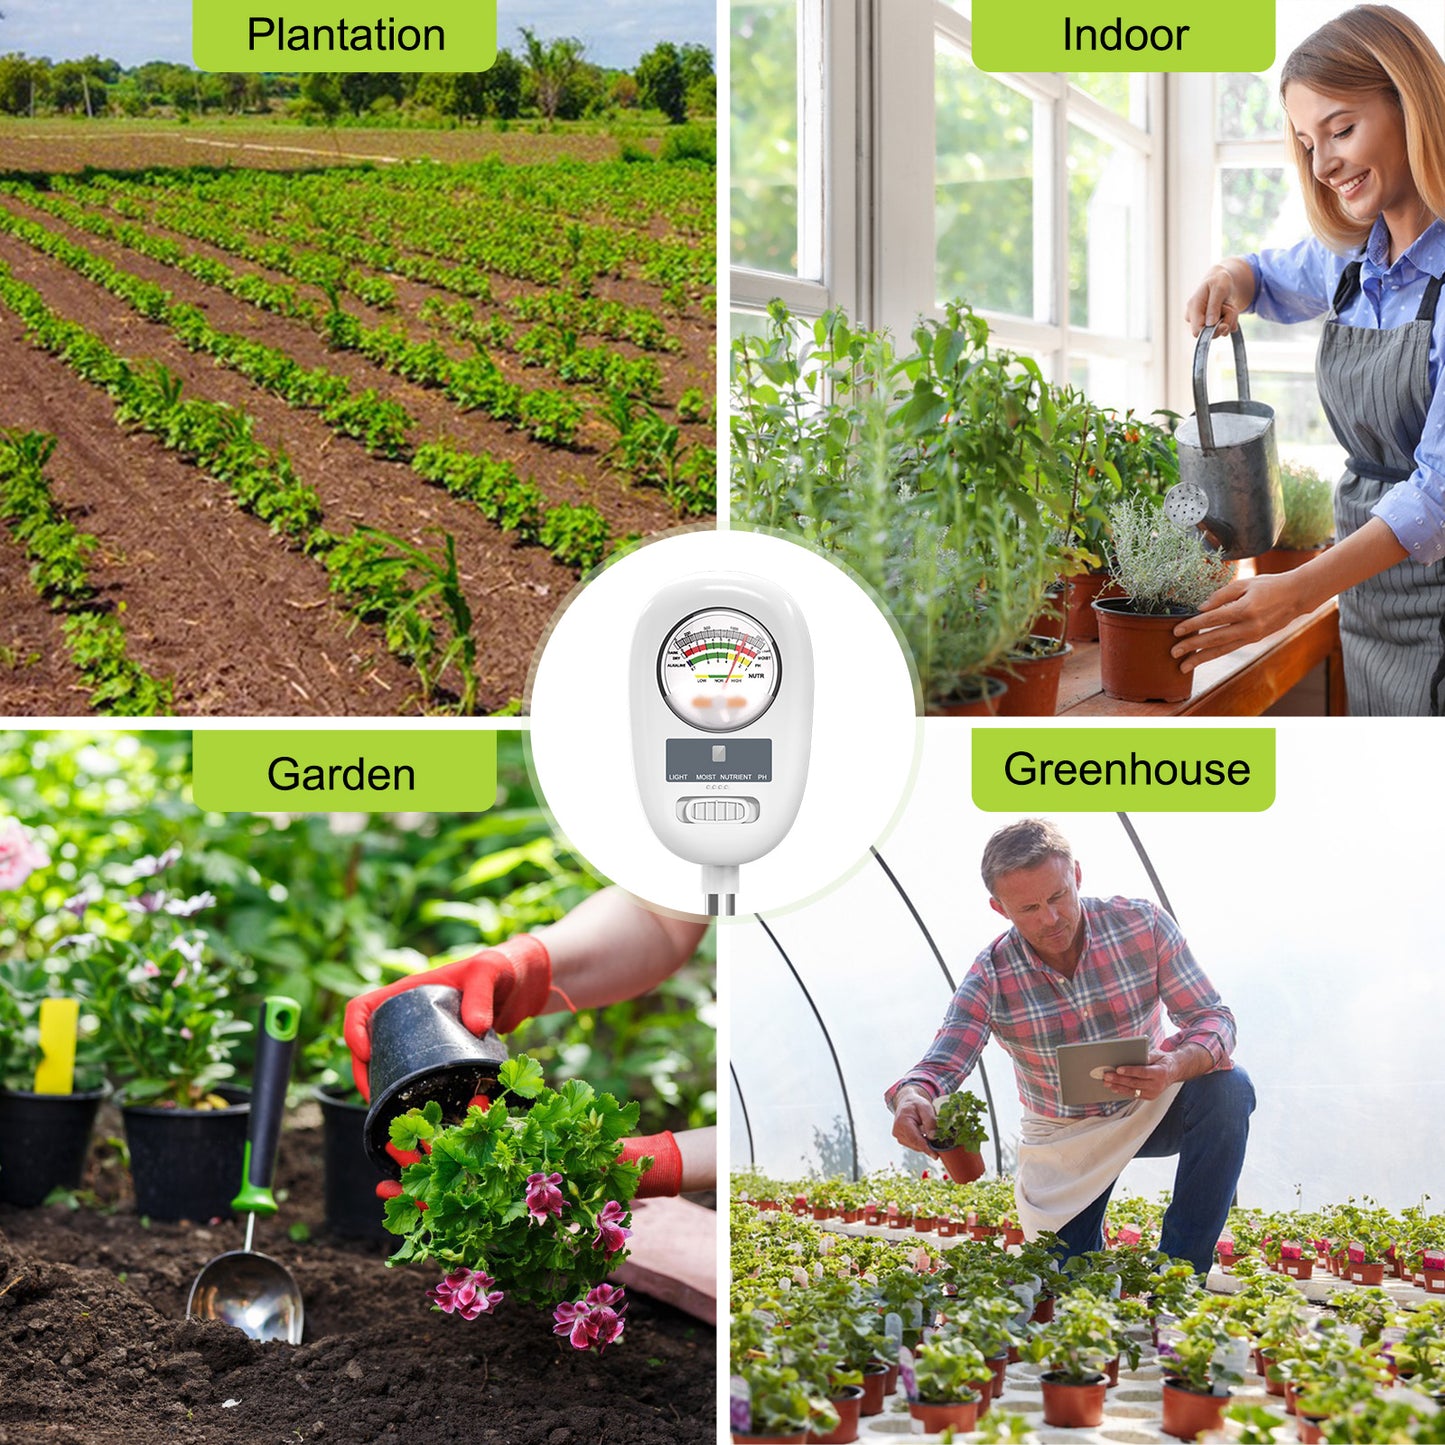 Soil Moisture Meter,4-in-1 Soil Ph Meter, Soil Tester for Moisture,  Light,Nutrients, pH,Soil Ph Test Kit, Great for Garden, Lawn, Farm, Indoor  